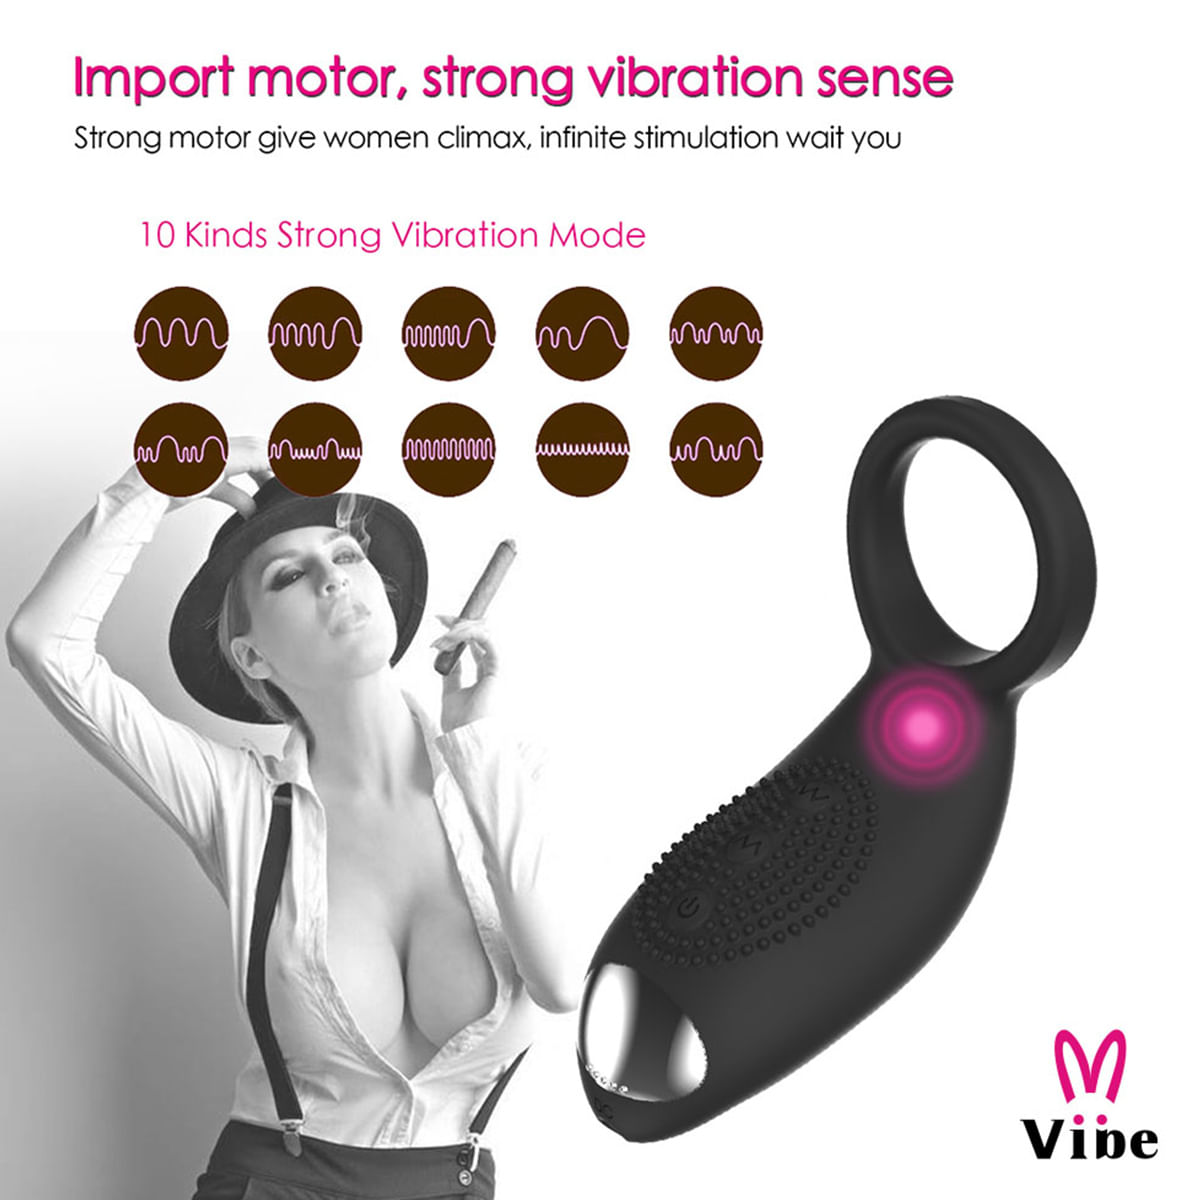 Vibe Anel Peniano e Plug Anal com Inclinação para Estimulação com 10 Modos de Vibração Vip Mix